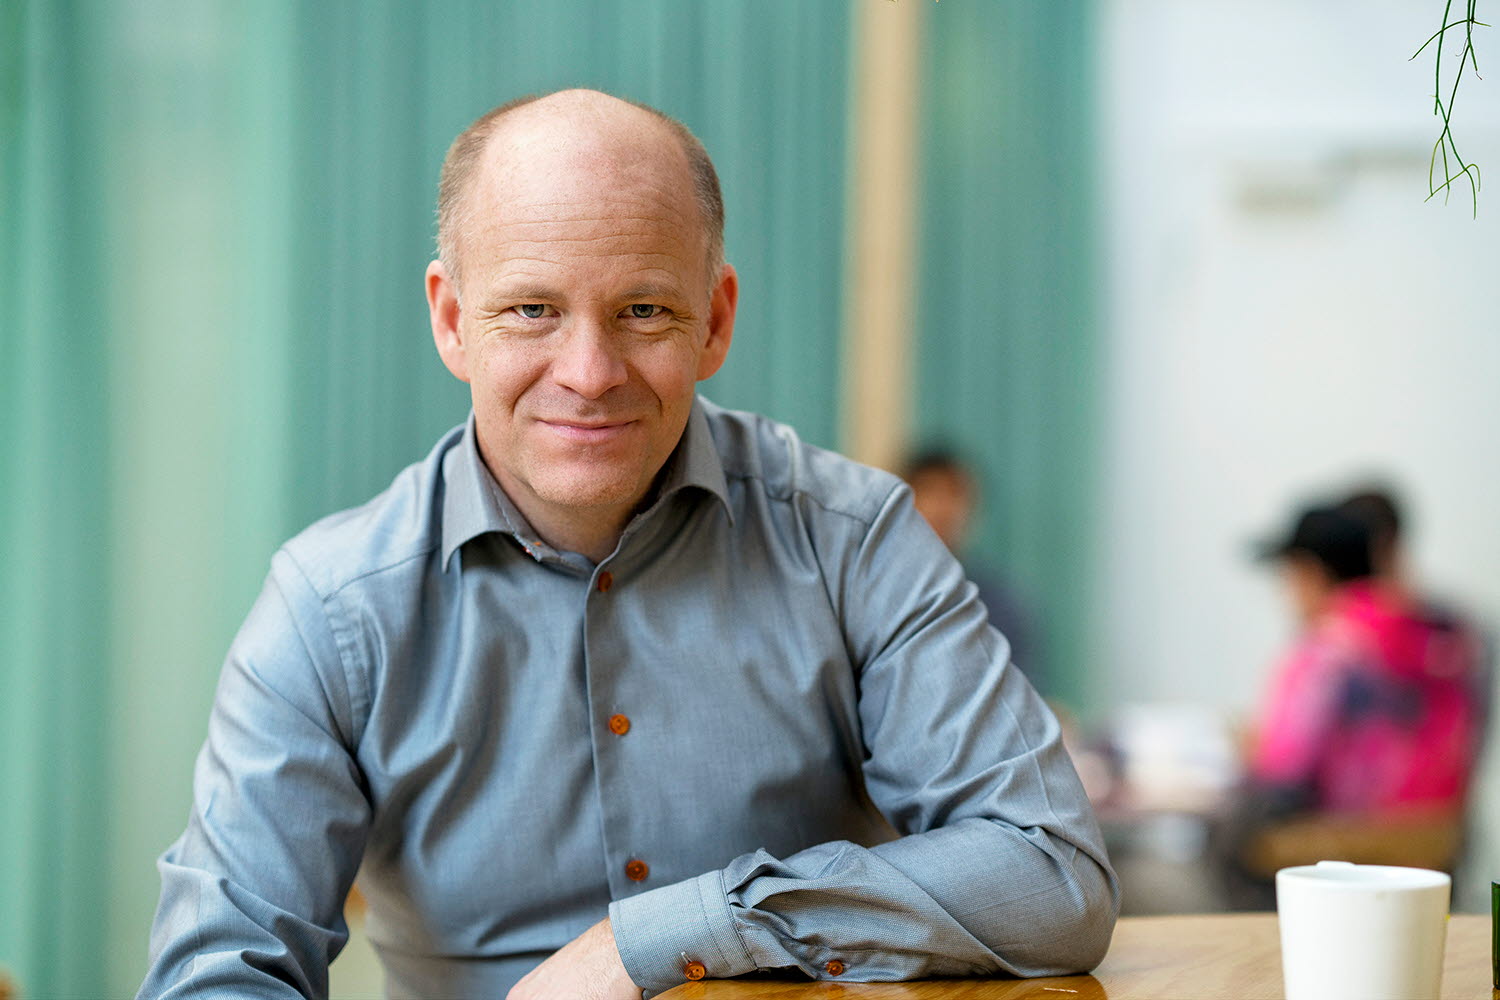 Henrik Eskilsson, co-founder and board member